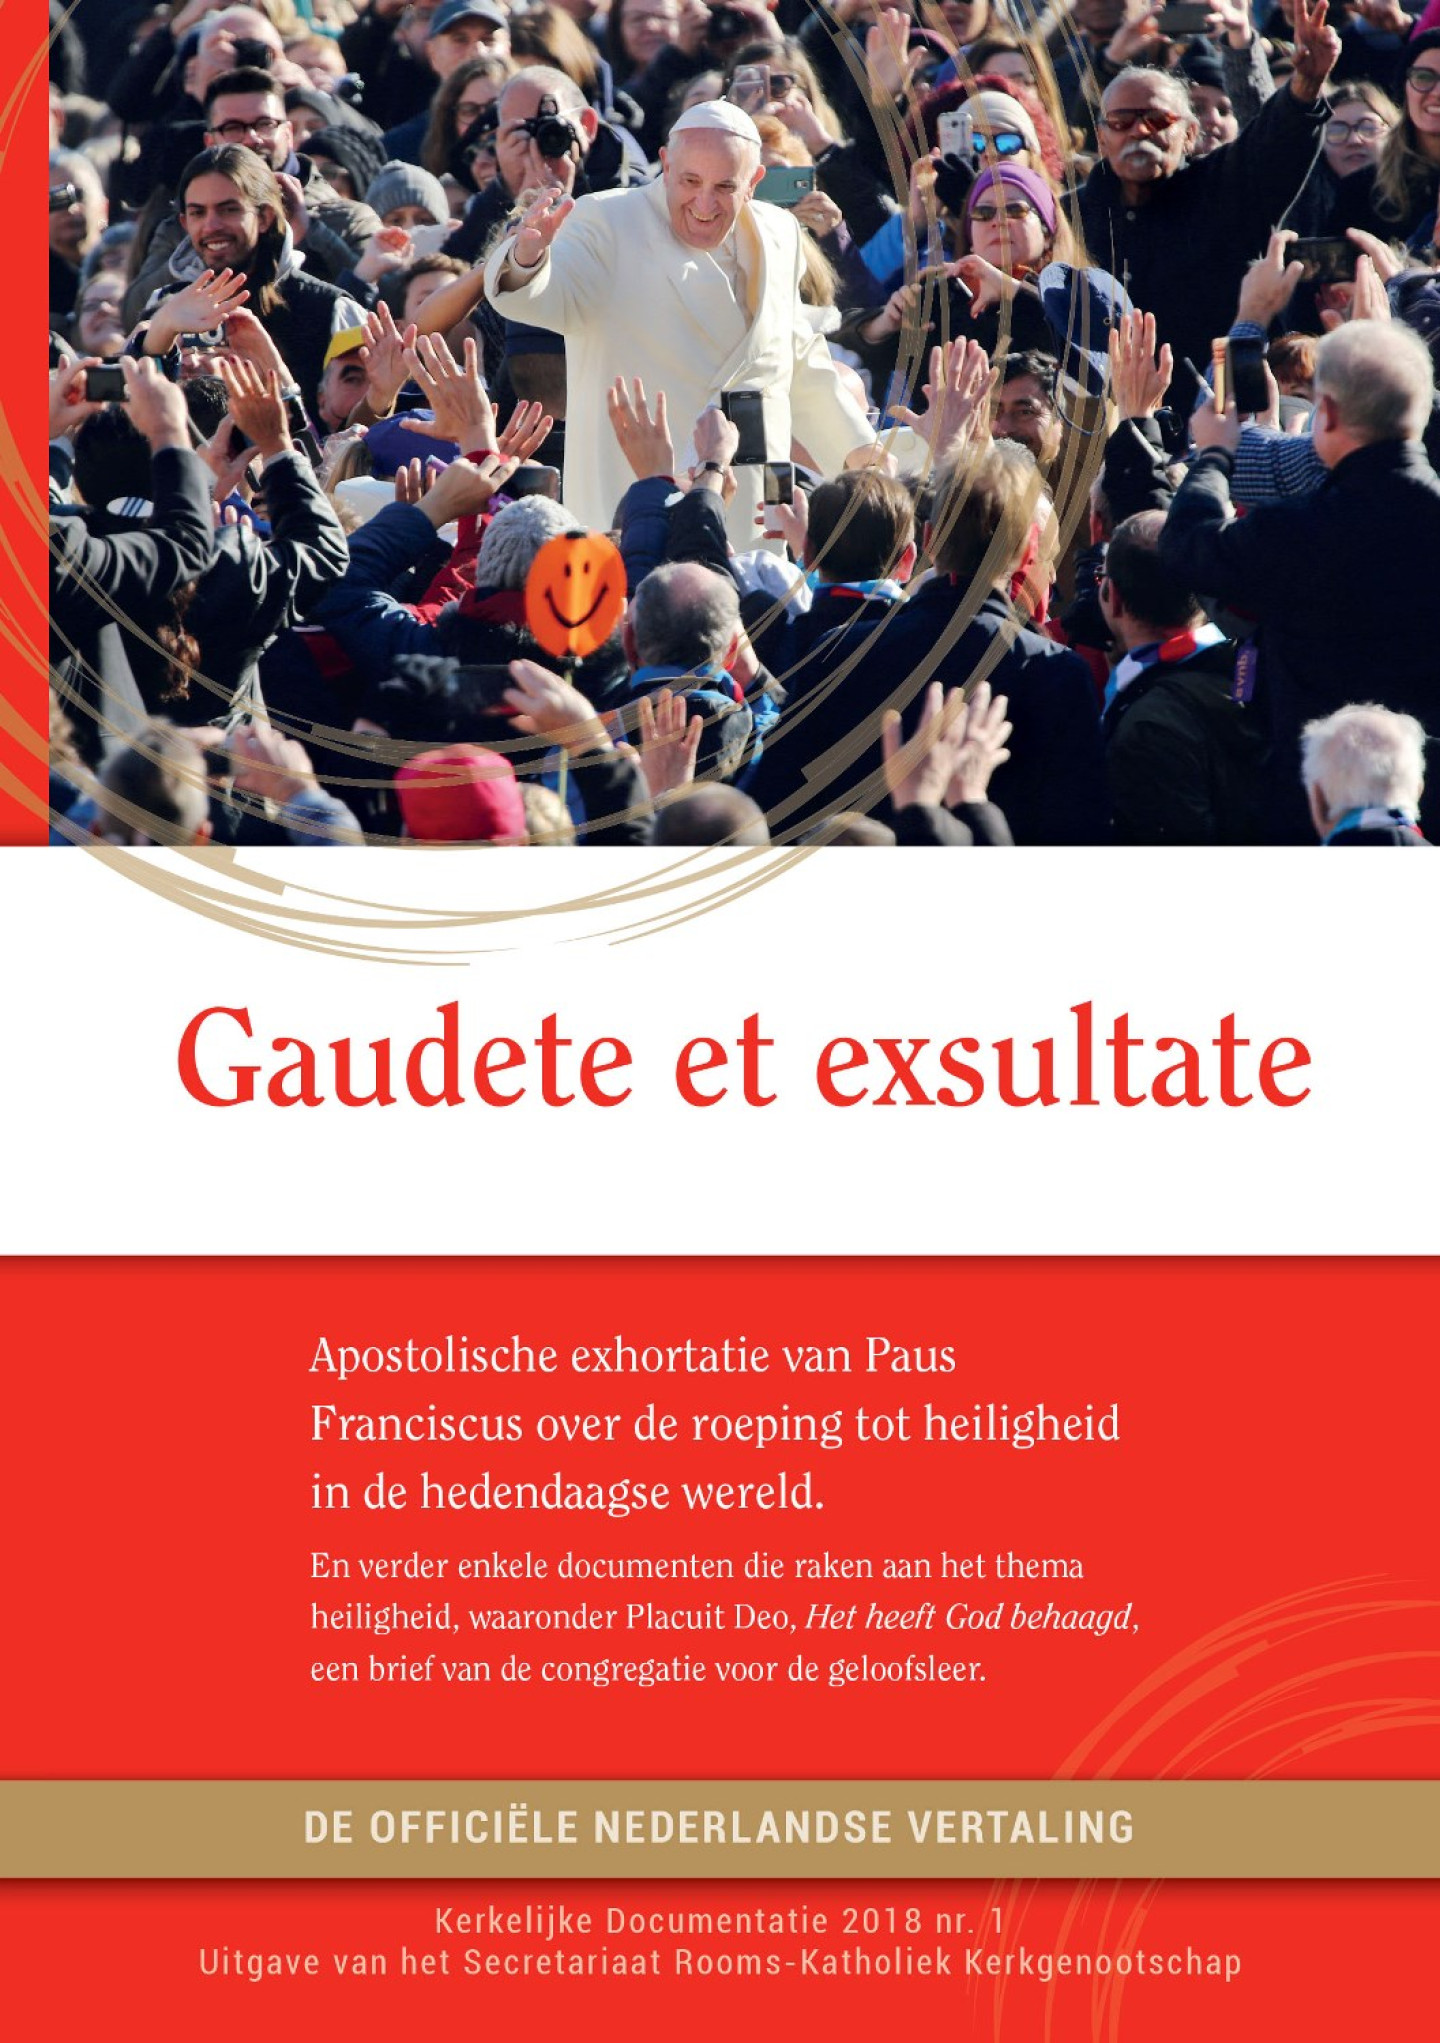 VK_Gaudete et exsultate_0726.indd